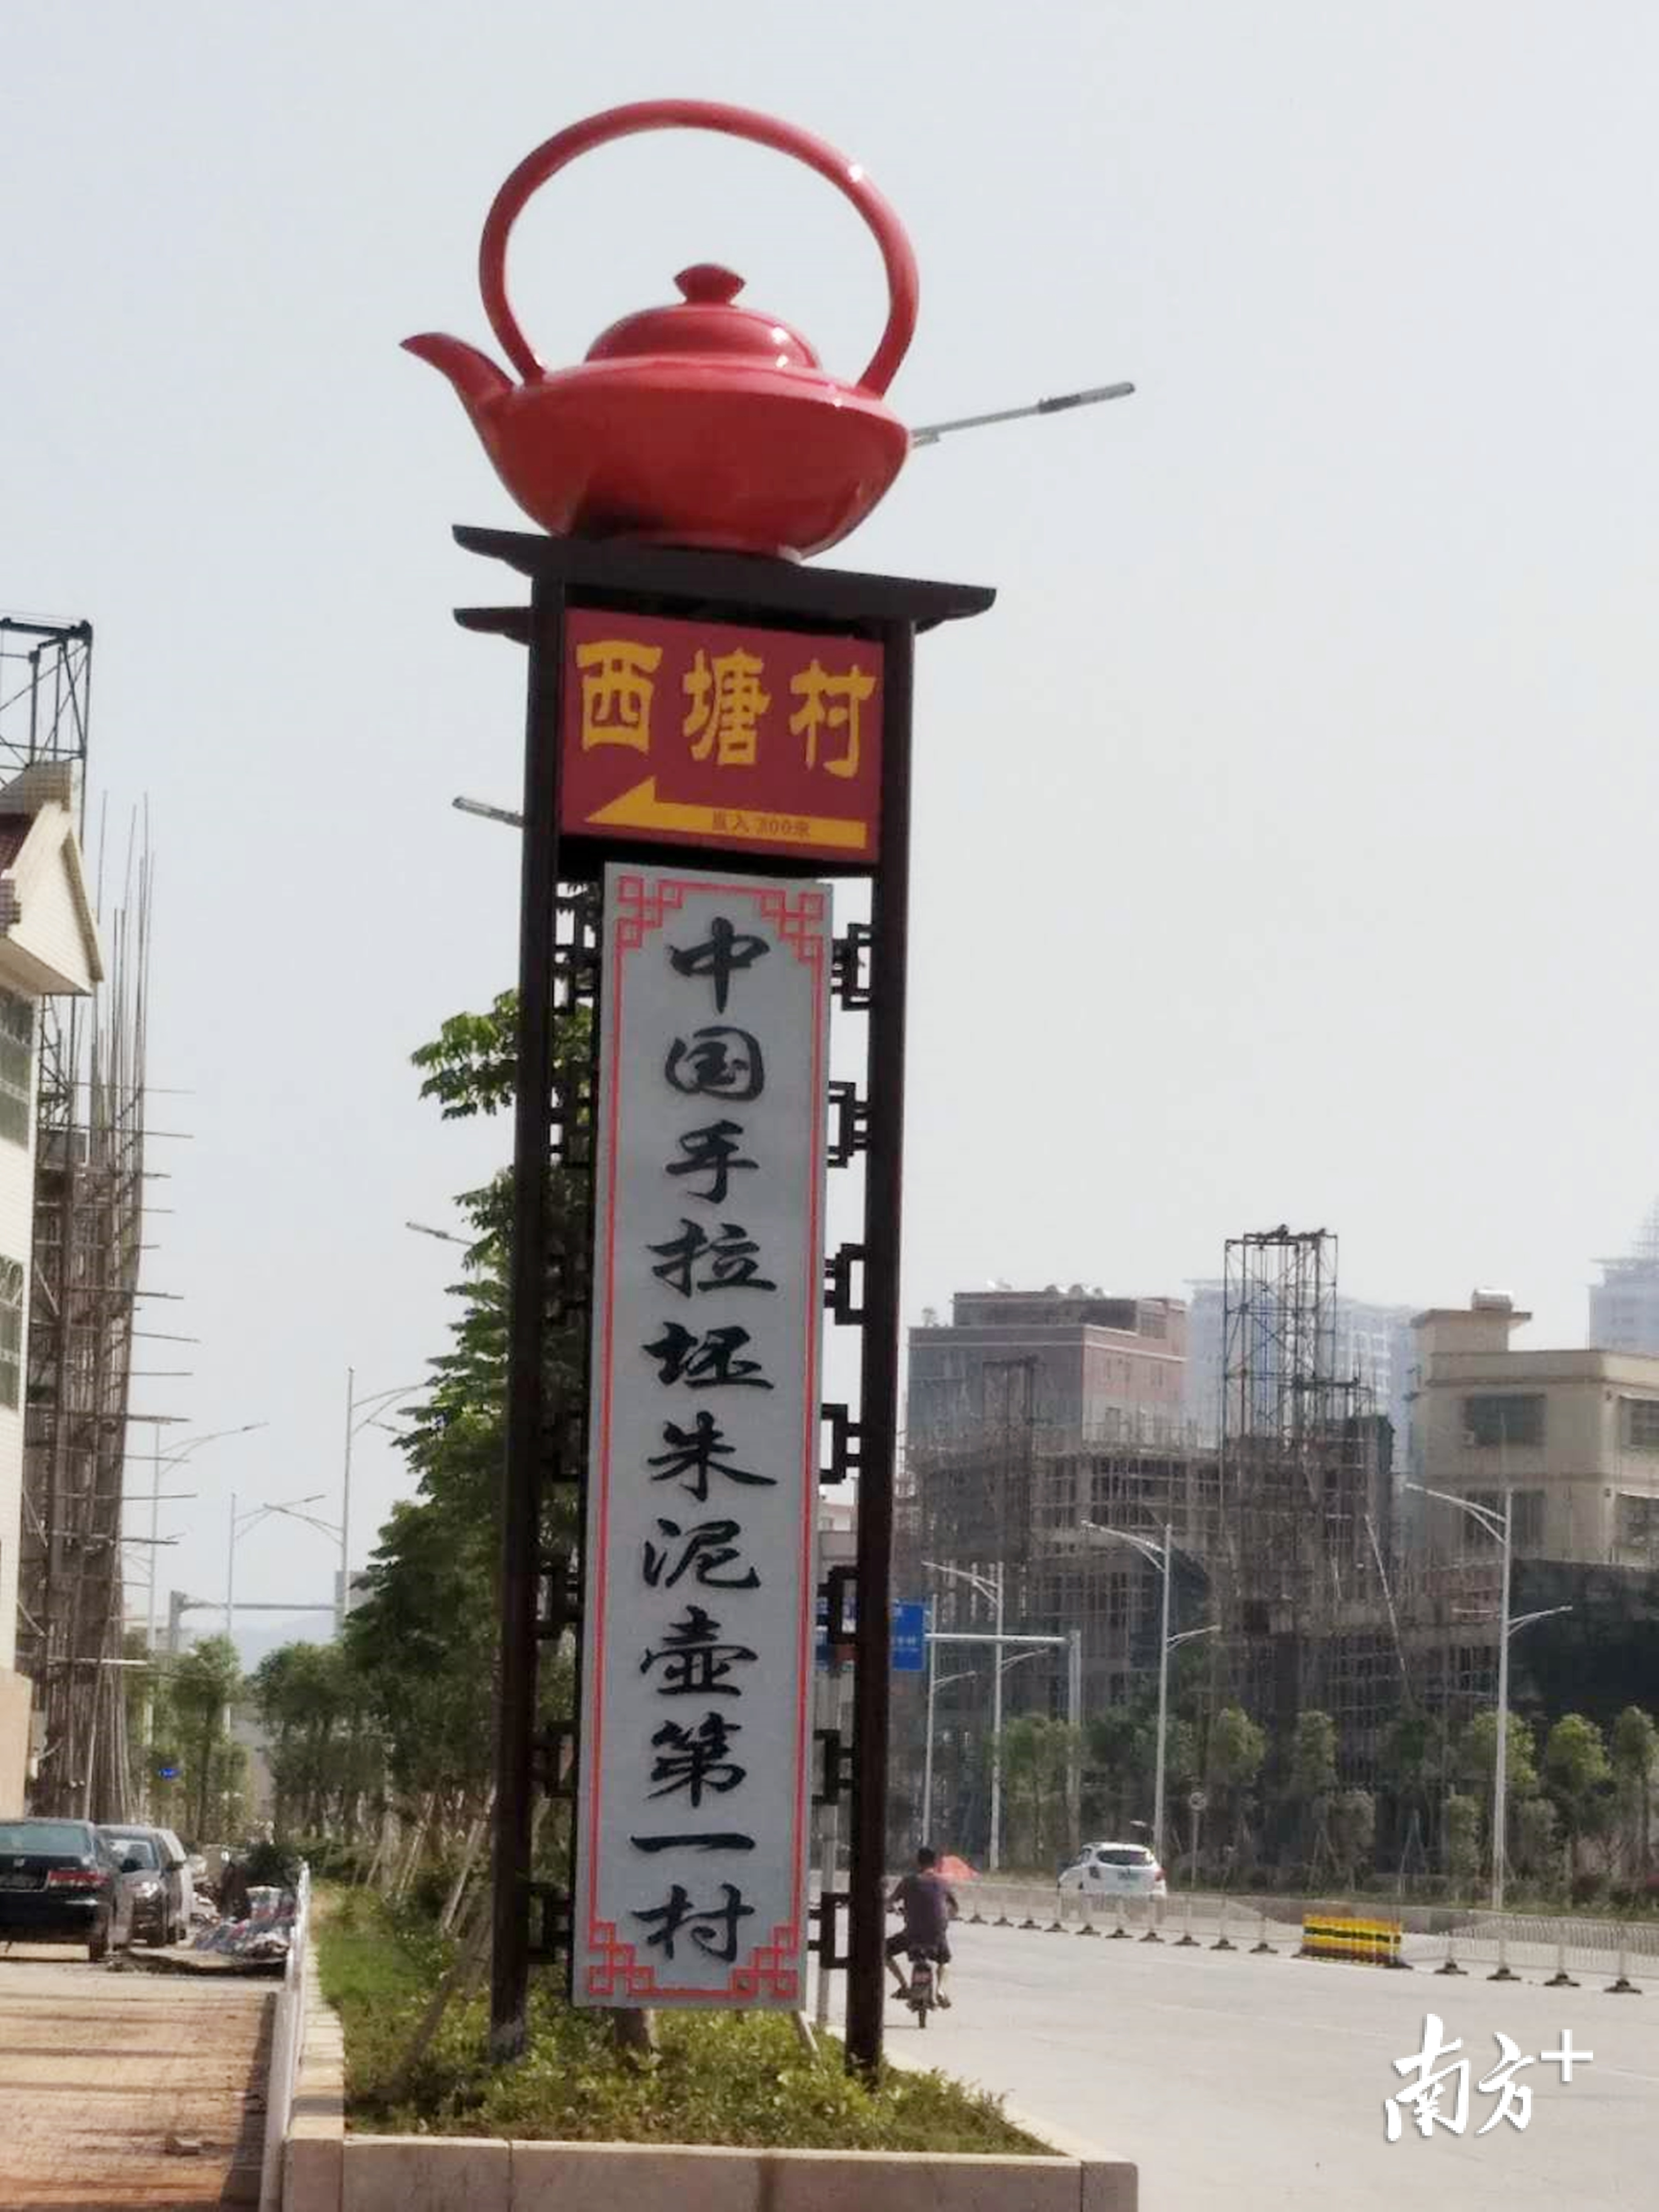 湘桥区西塘村手拉壶是一张亮丽名片。